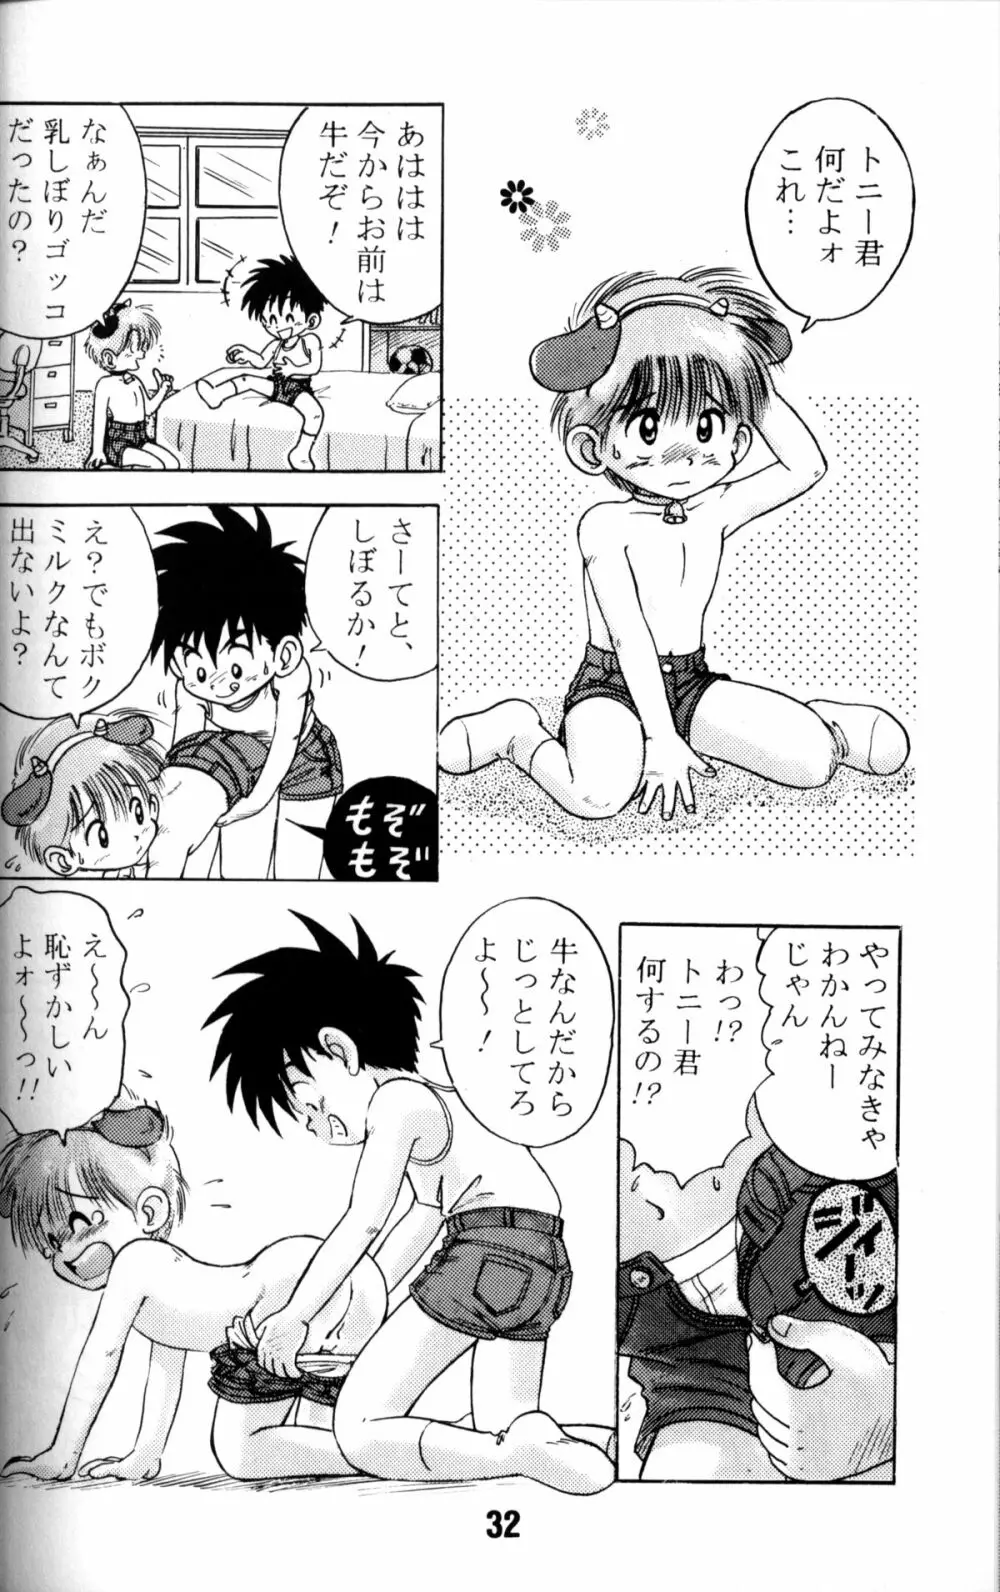 Anthology - Nekketsu Project - Volume 1 'Shounen Banana Milk' Page.31